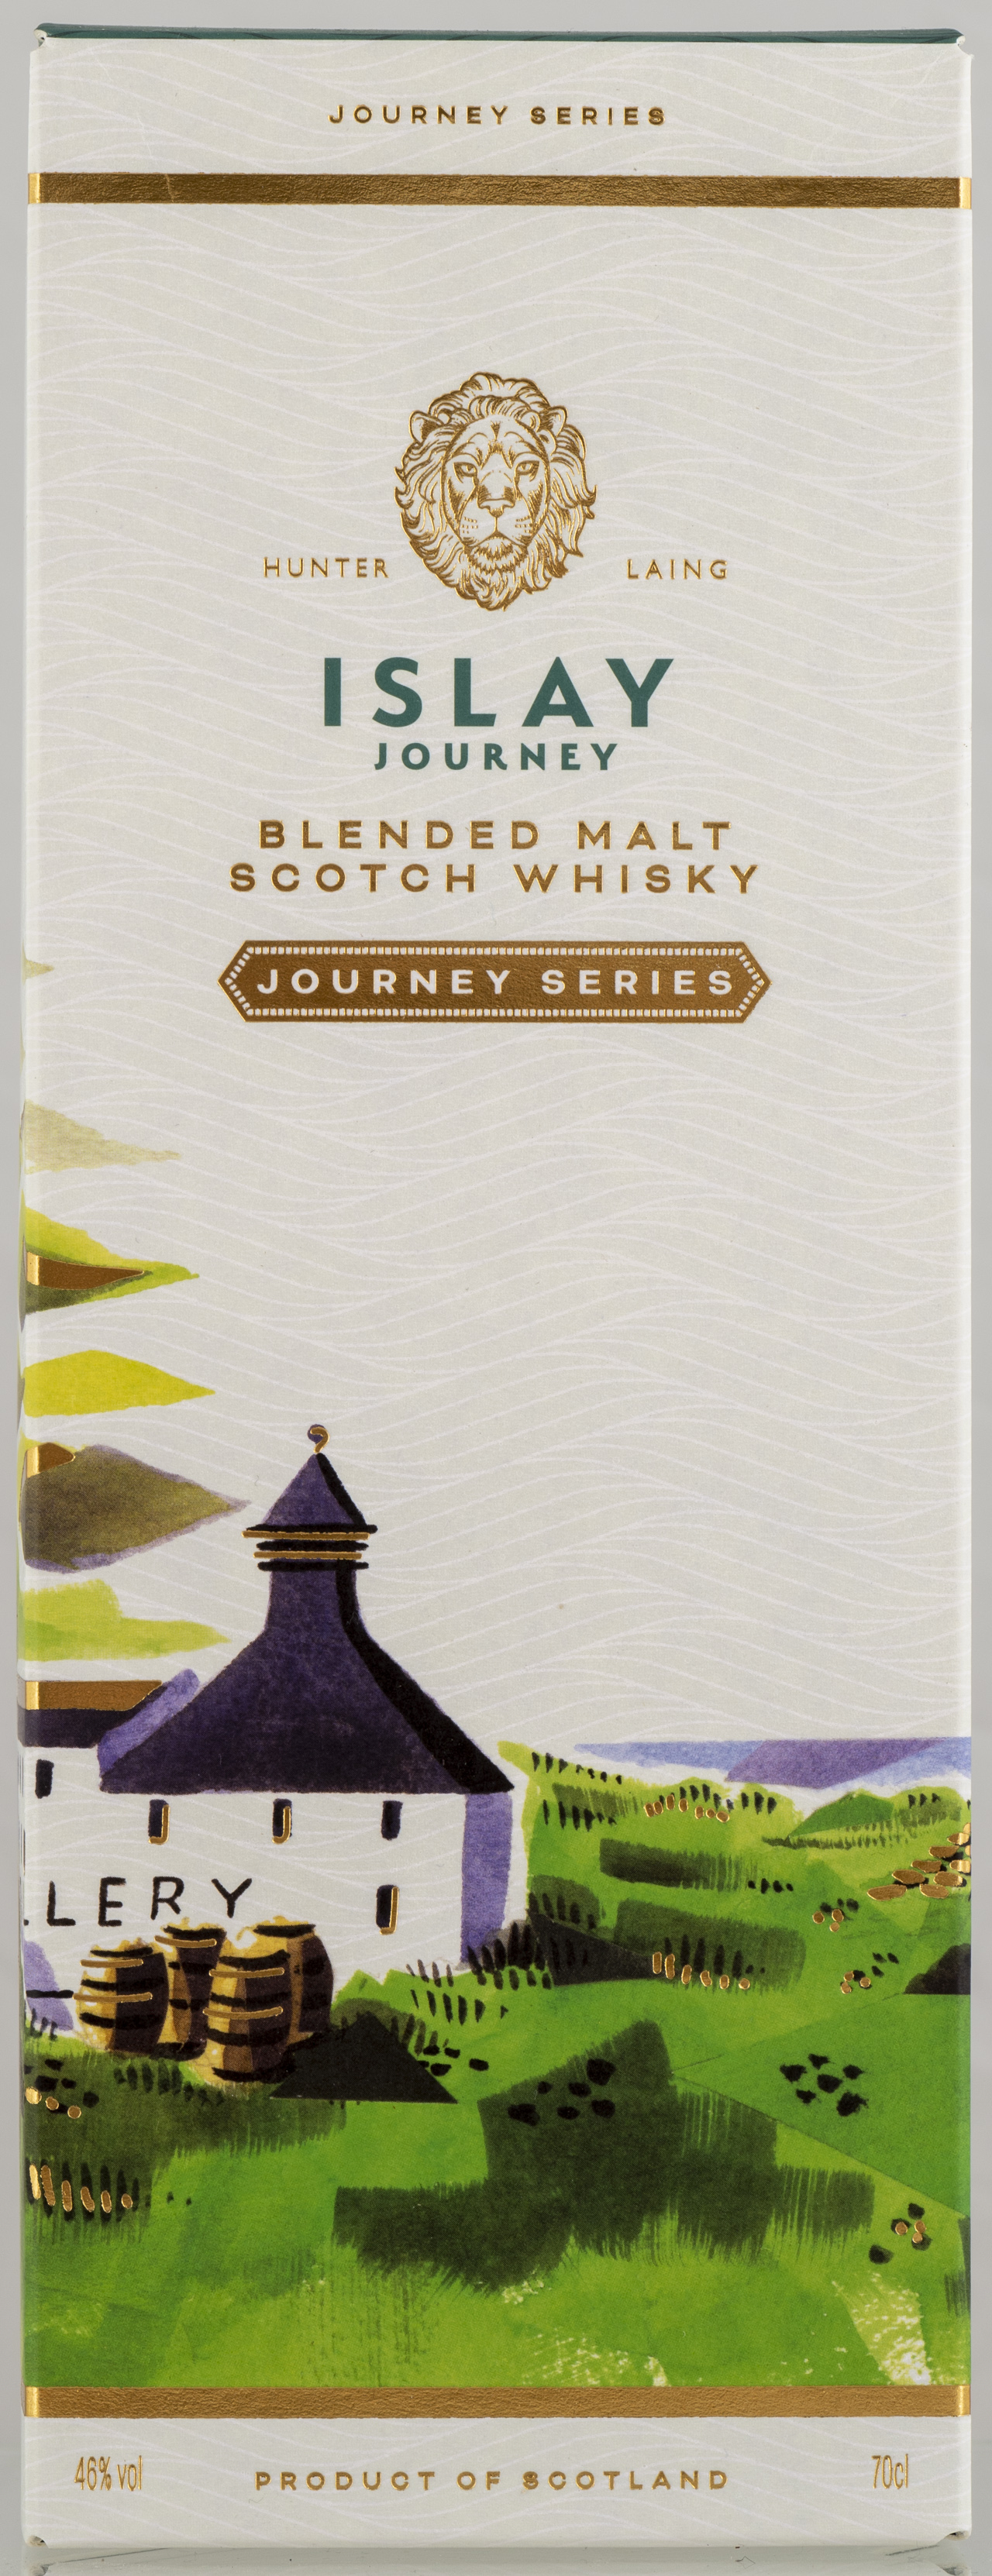 Billede: PHC_7324 - Hunter Laing Islay Journey Blended Malt - box front.jpg